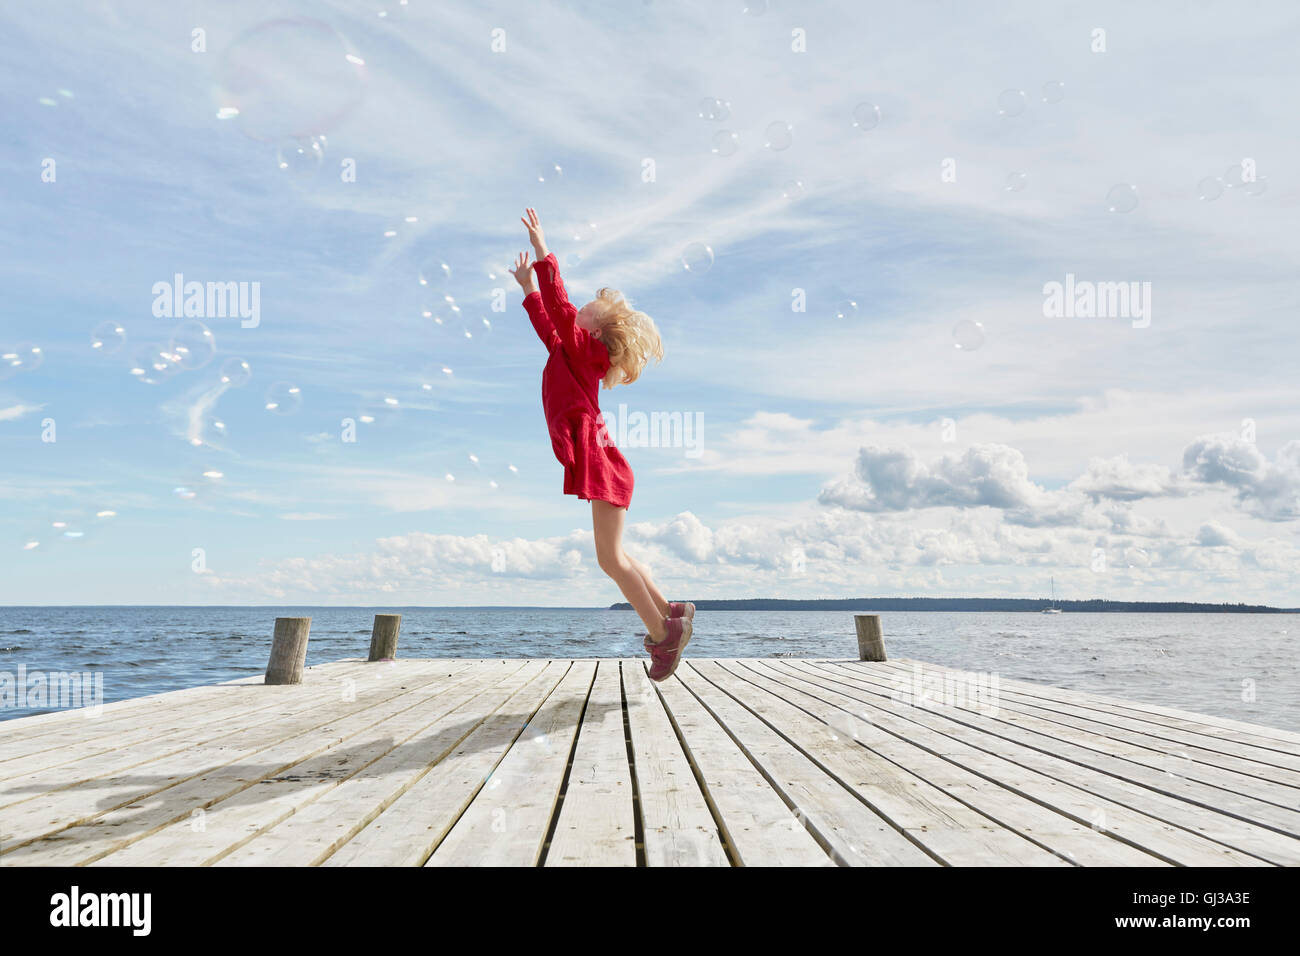 Jeune fille sur la jetée en bois, sauter pour atteindre bubbles Banque D'Images